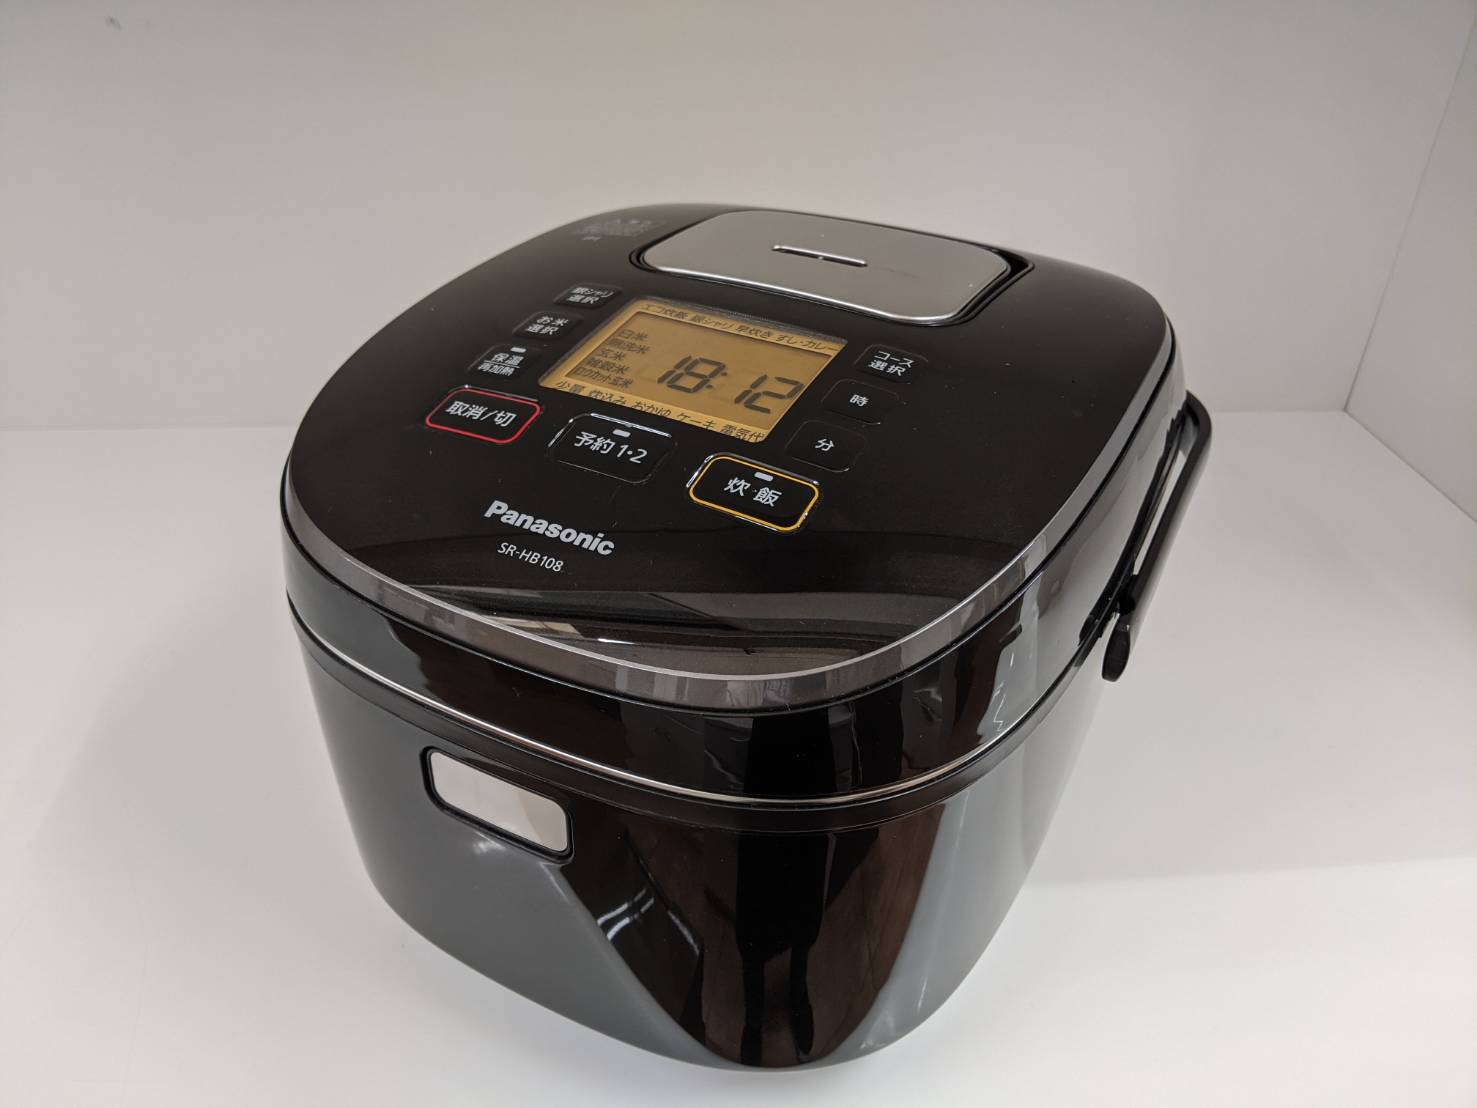 【Panasonic 5.5合炊飯器 SR-HB10B 2019年製 パナソニック】お買取り致しました!⭐️福岡市 城南区 リサイクルショップ リサイクルマート片江店⭐️ - リサイクルマートは現在冷蔵庫の買取、家具の買取強化中です！お気軽にお問い合わせください。